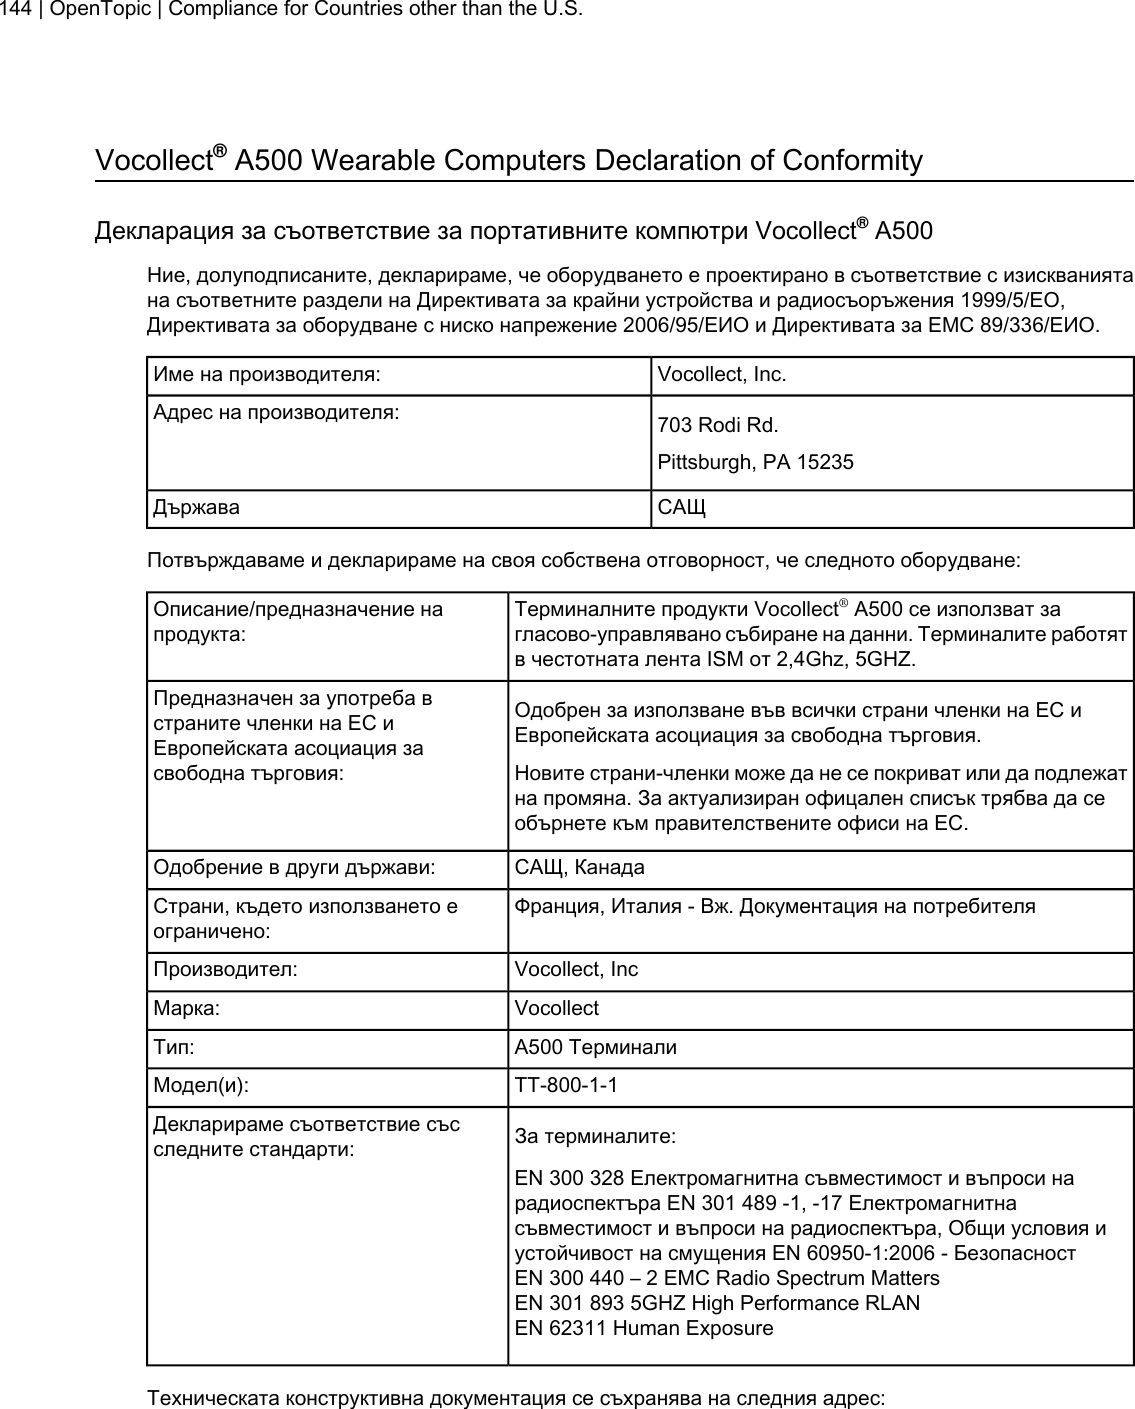 Vocollect®A500 Wearable Computers Declaration of ConformityДекларация за съответствие за портативните компютри Vocollect®A500Ние, долуподписаните, декларираме, че оборудването е проектирано в съответствие с изискваниятана съответните раздели на Директивата за крайни устройства и радиосъоръжения 1999/5/EО,Директивата за оборудване с ниско напрежение 2006/95/ЕИО и Директивата за ЕМС 89/336/ЕИО.Vocollect, Inc.Име на производителя:703 Rodi Rd.Адрес на производителя:Pittsburgh, PA 15235САЩДържаваПотвърждаваме и декларираме на своя собствена отговорност, че следното оборудване:Терминалните продукти Vocollect®A500 се използват загласово-управлявано събиране на данни. Терминалите работятв честотната лента ISM от 2,4Ghz, 5GHZ.Описание/предназначение напродукта:Одобрен за използване във всички страни членки на ЕС иЕвропейската асоциация за свободна търговия.Предназначен за употреба встраните членки на ЕС иЕвропейската асоциация засвободна търговия: Новите страни-членки може да не се покриват или да подлежатна промяна. За актуализиран офицален списък трябва да сеобърнете към правителствените офиси на ЕС.САЩ, КанадаОдобрение в други държави:Франция, Италия - Вж. Документация на потребителяСтрани, където използването еограничено:Vocollect, IncПроизводител:VocollectМарка:A500 ТерминалиТип:TT-800-1-1Модел(и):За терминалите:Декларираме съответствие съсследните стандарти:EN 300 328 Електромагнитна съвместимост и въпроси нарадиоспектъра EN 301 489 -1, -17 Електромагнитнасъвместимост и въпроси на радиоспектъра, Общи условия иустойчивост на смущения EN 60950-1:2006 - БезопасностEN 300 440 – 2 EMC Radio Spectrum MattersEN 301 893 5GHZ High Performance RLANEN 62311 Human ExposureТехническата конструктивна документация се съхранява на следния адрес:144 | OpenTopic | Compliance for Countries other than the U.S.